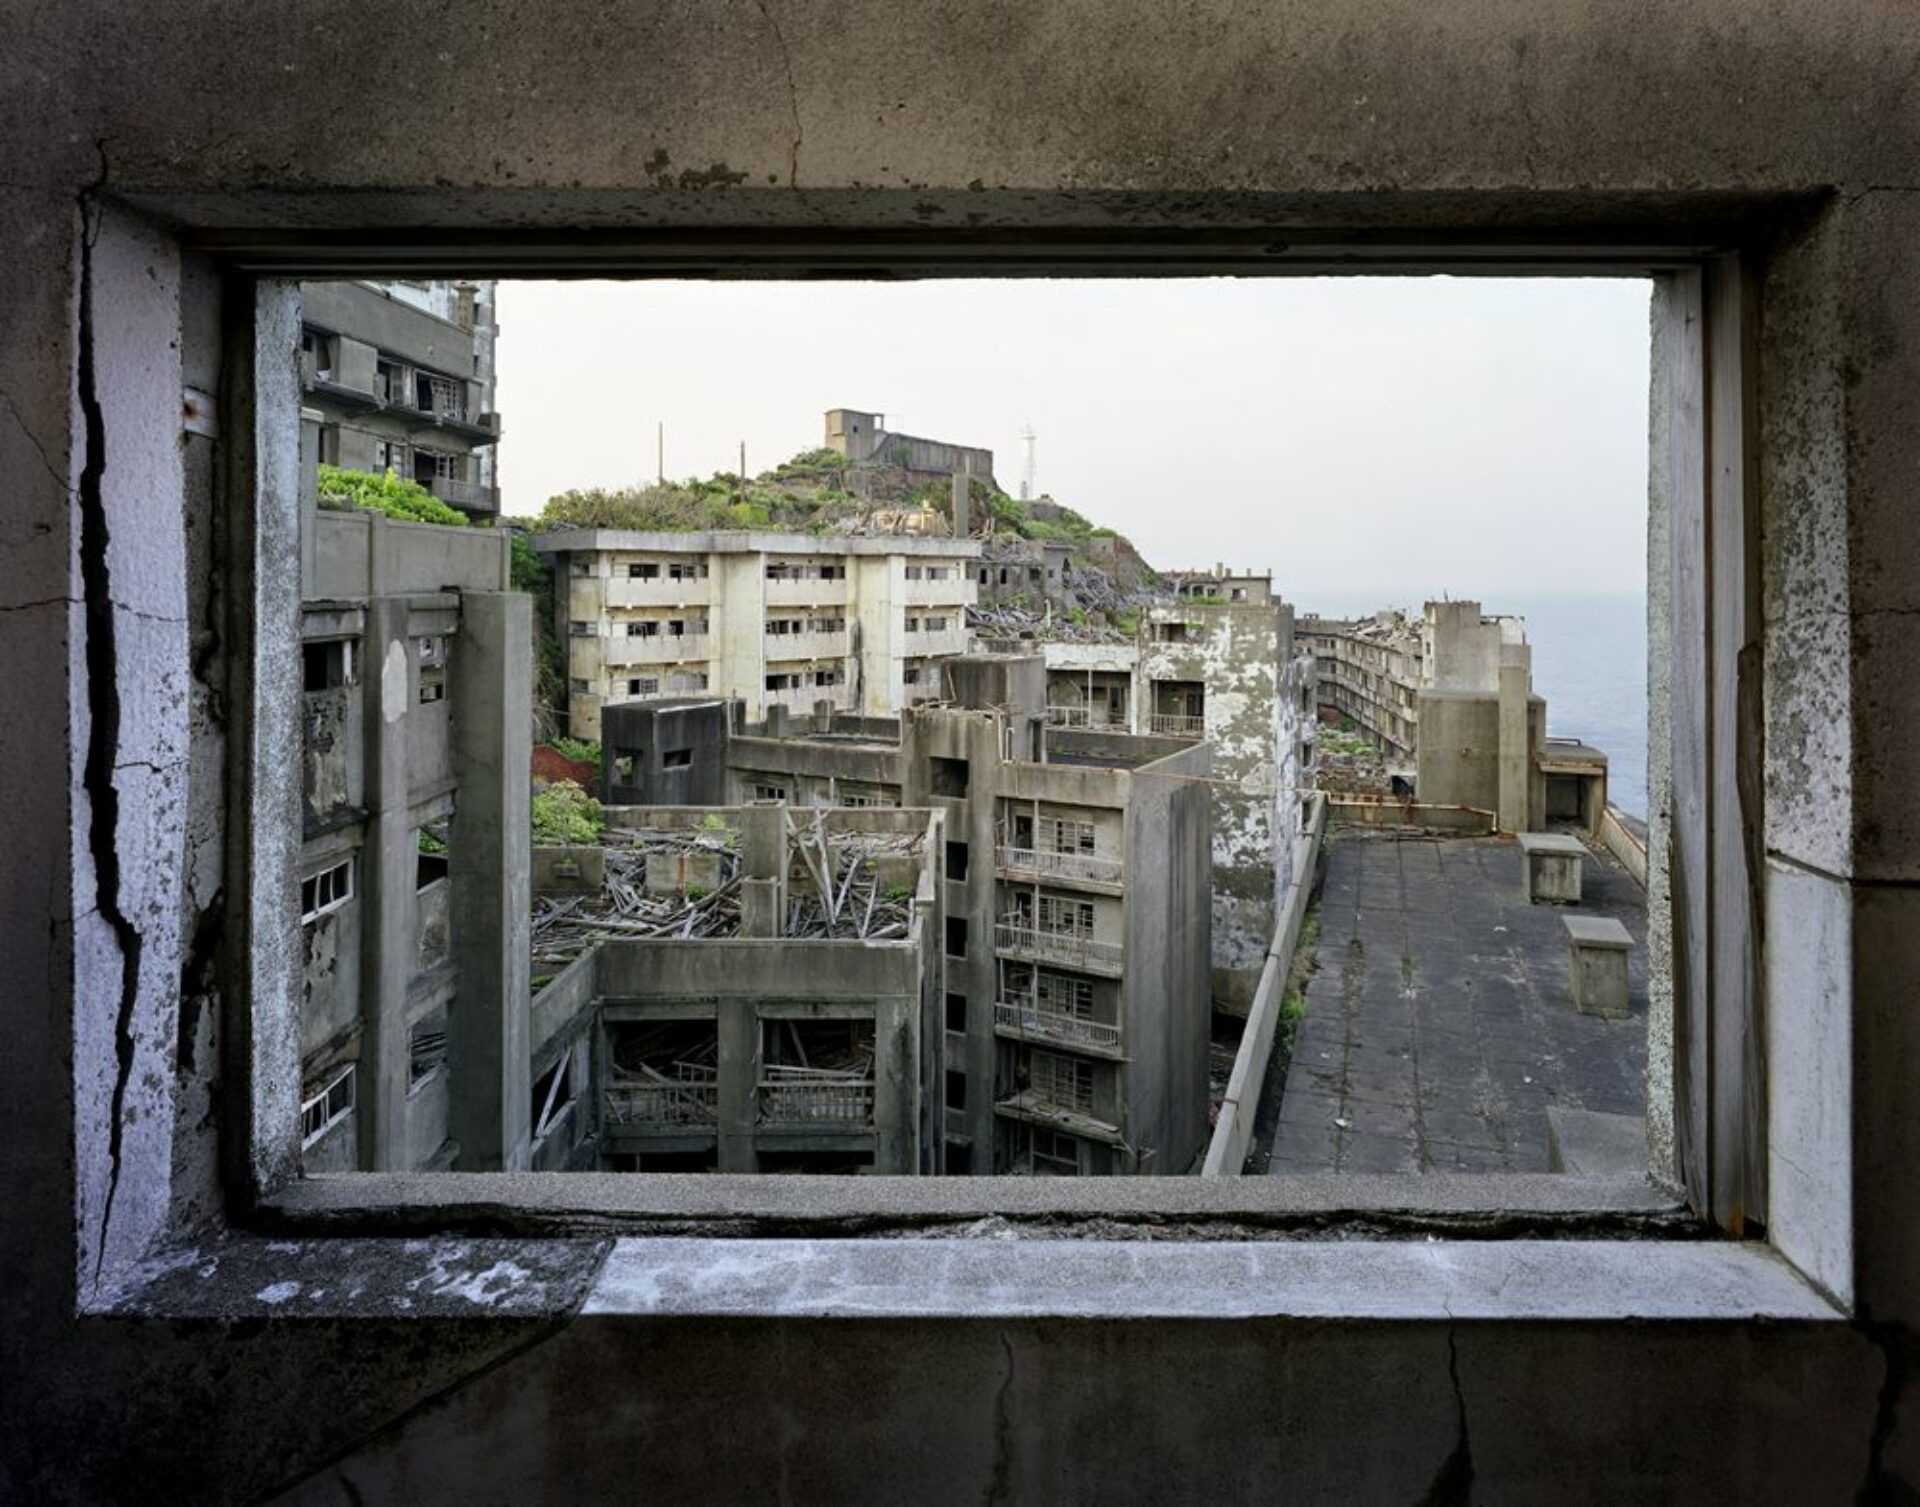 Looking South from building 51, tirée de la série « Gunkanjima », © Yves Marchand et Romain Meffre